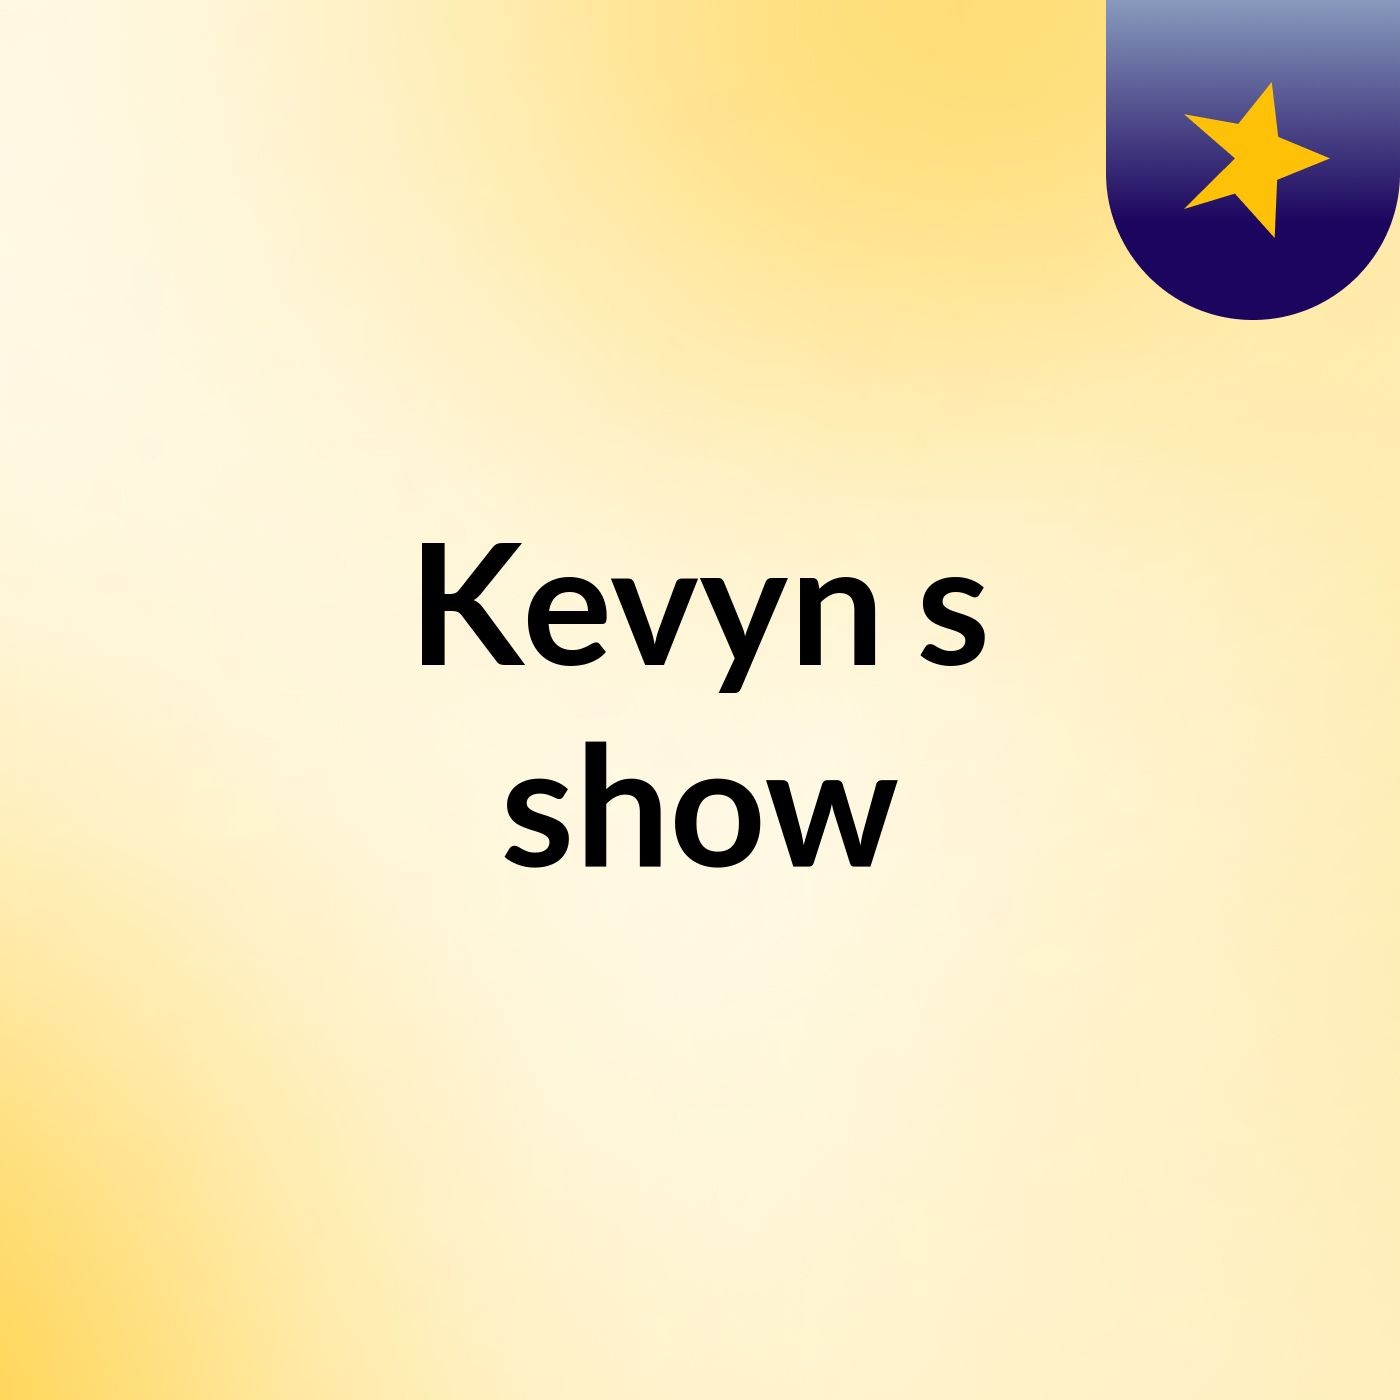 Kevyn's show